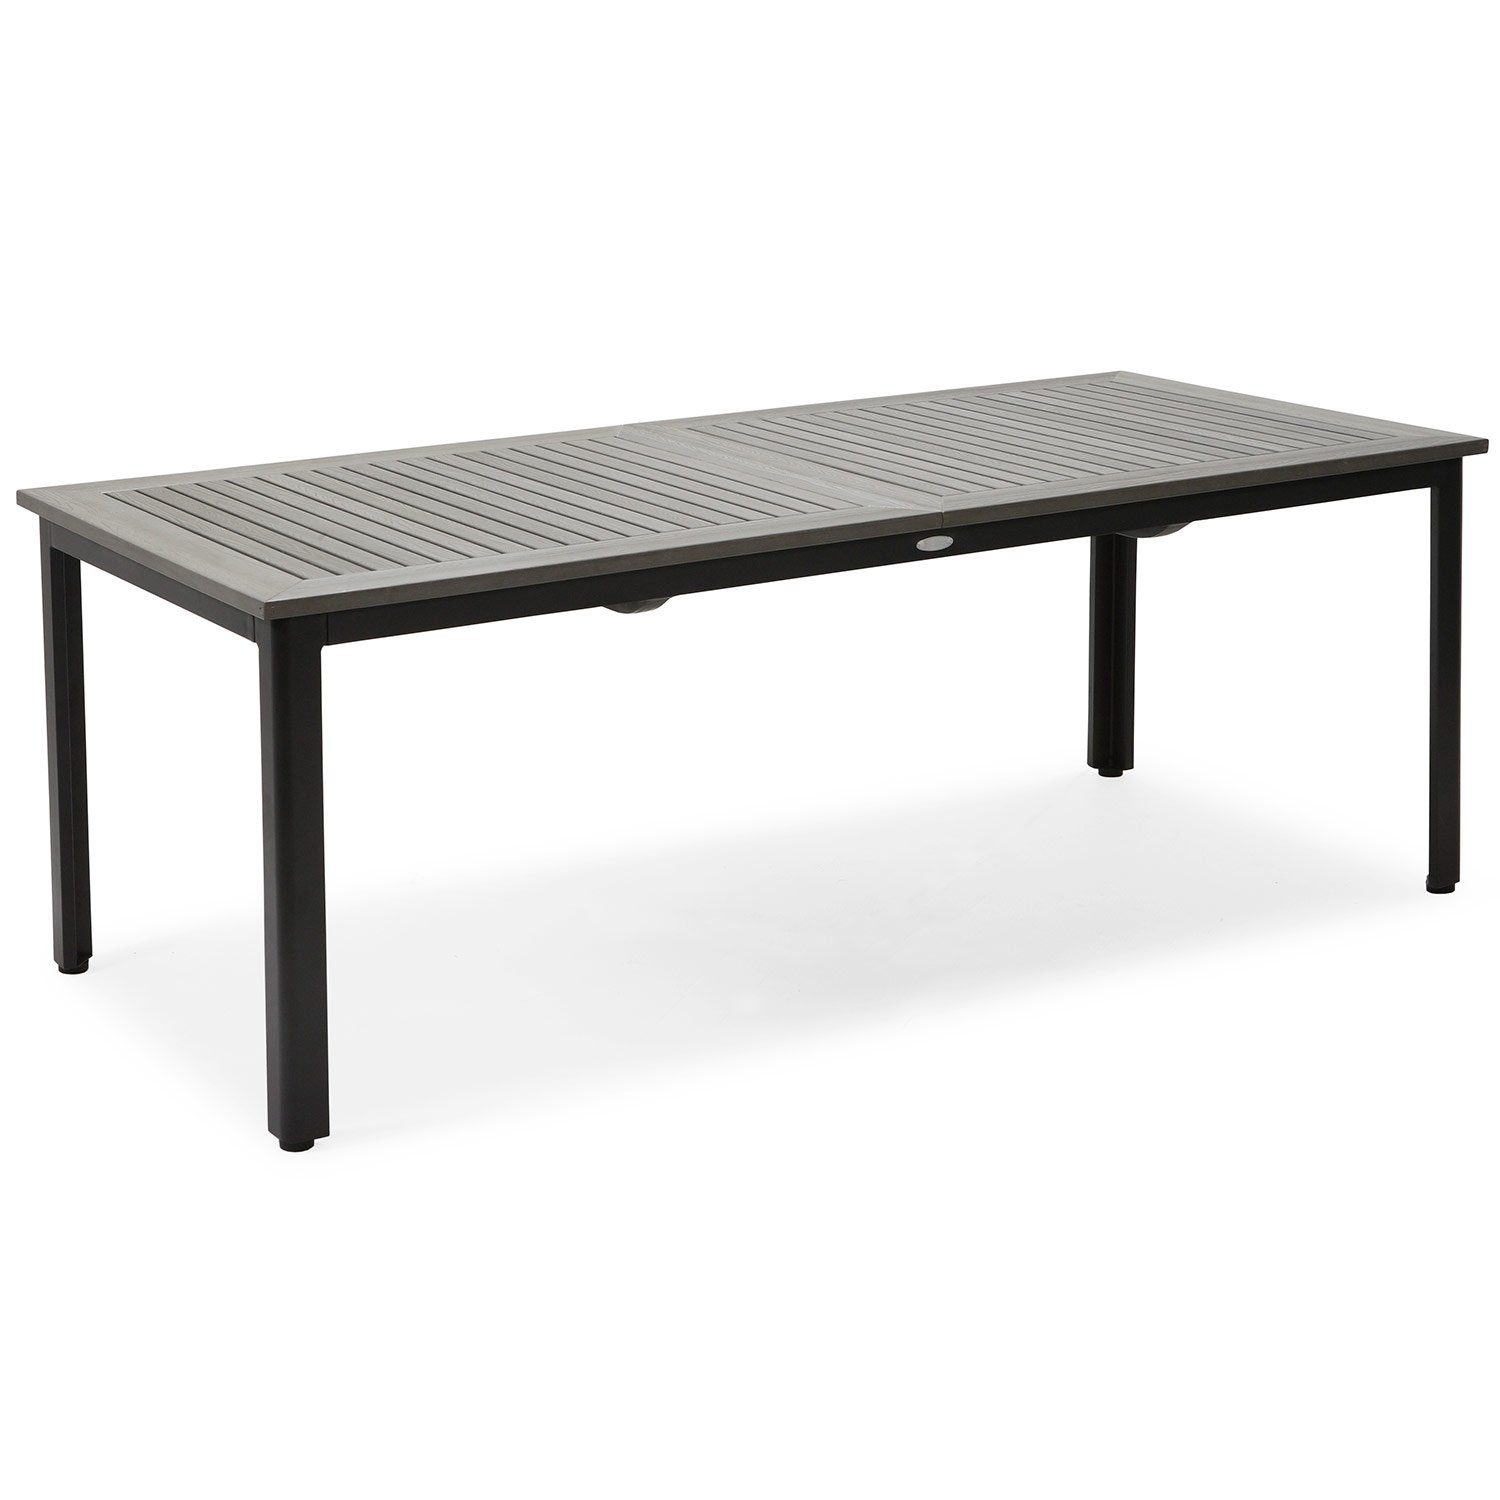 Nydala bord från Hillerstorp i svart aluminium med nonwoodskiva i storleken 90x200/280 cm.